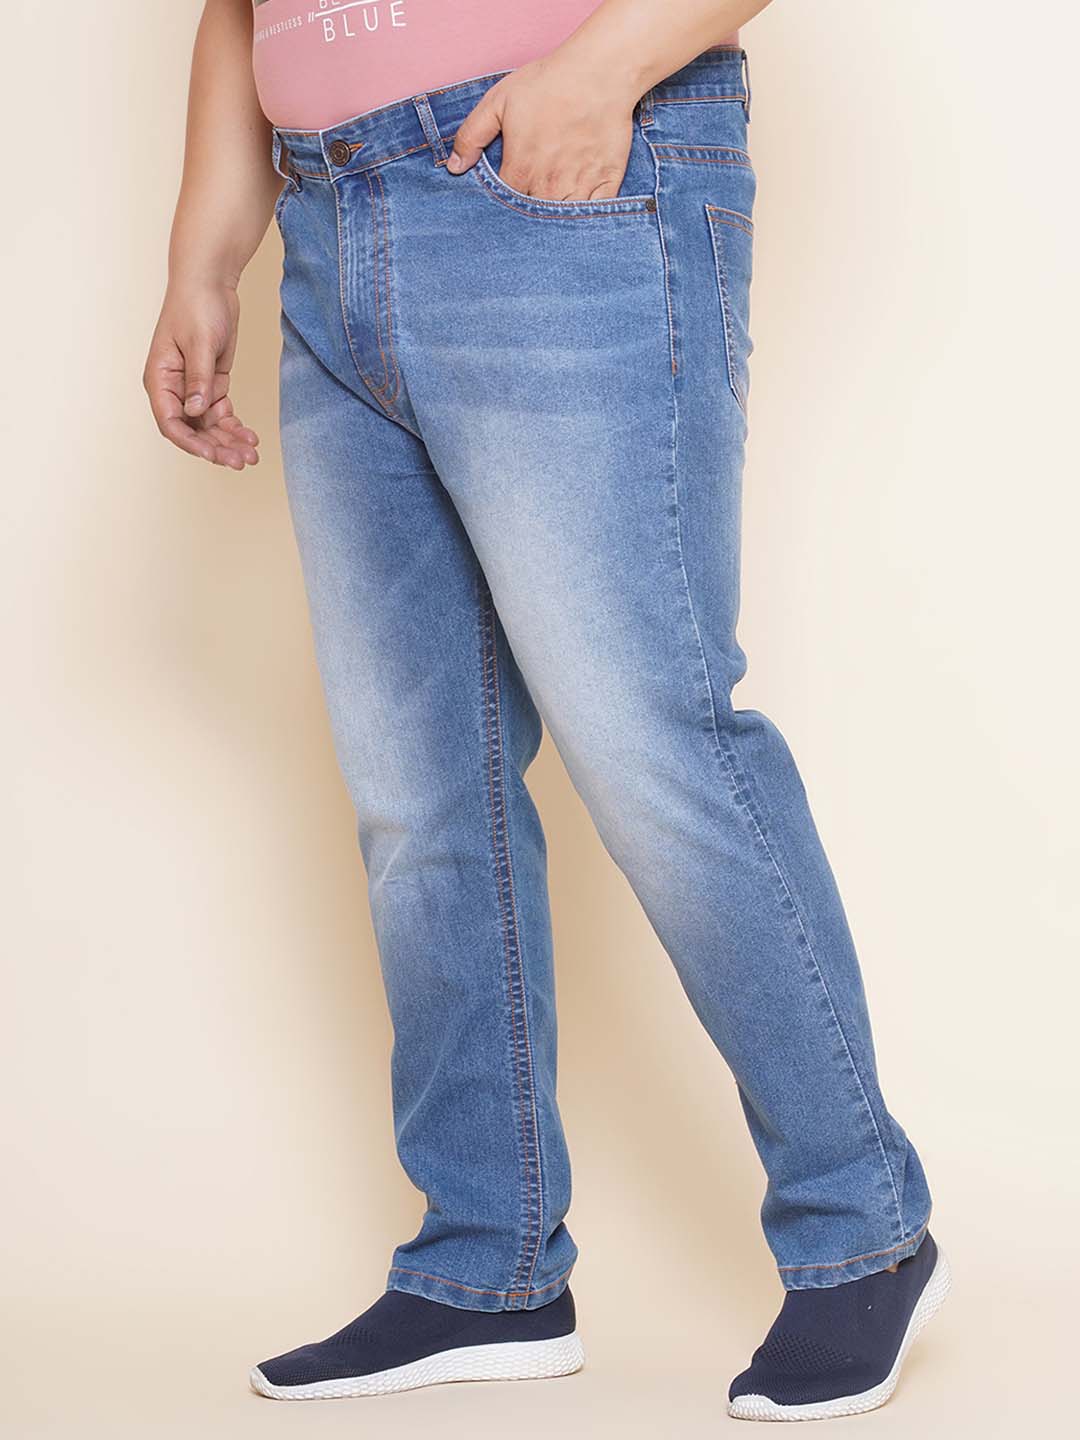 bottomwear/jeans/EJPJ25100/ejpj25100-3.jpg